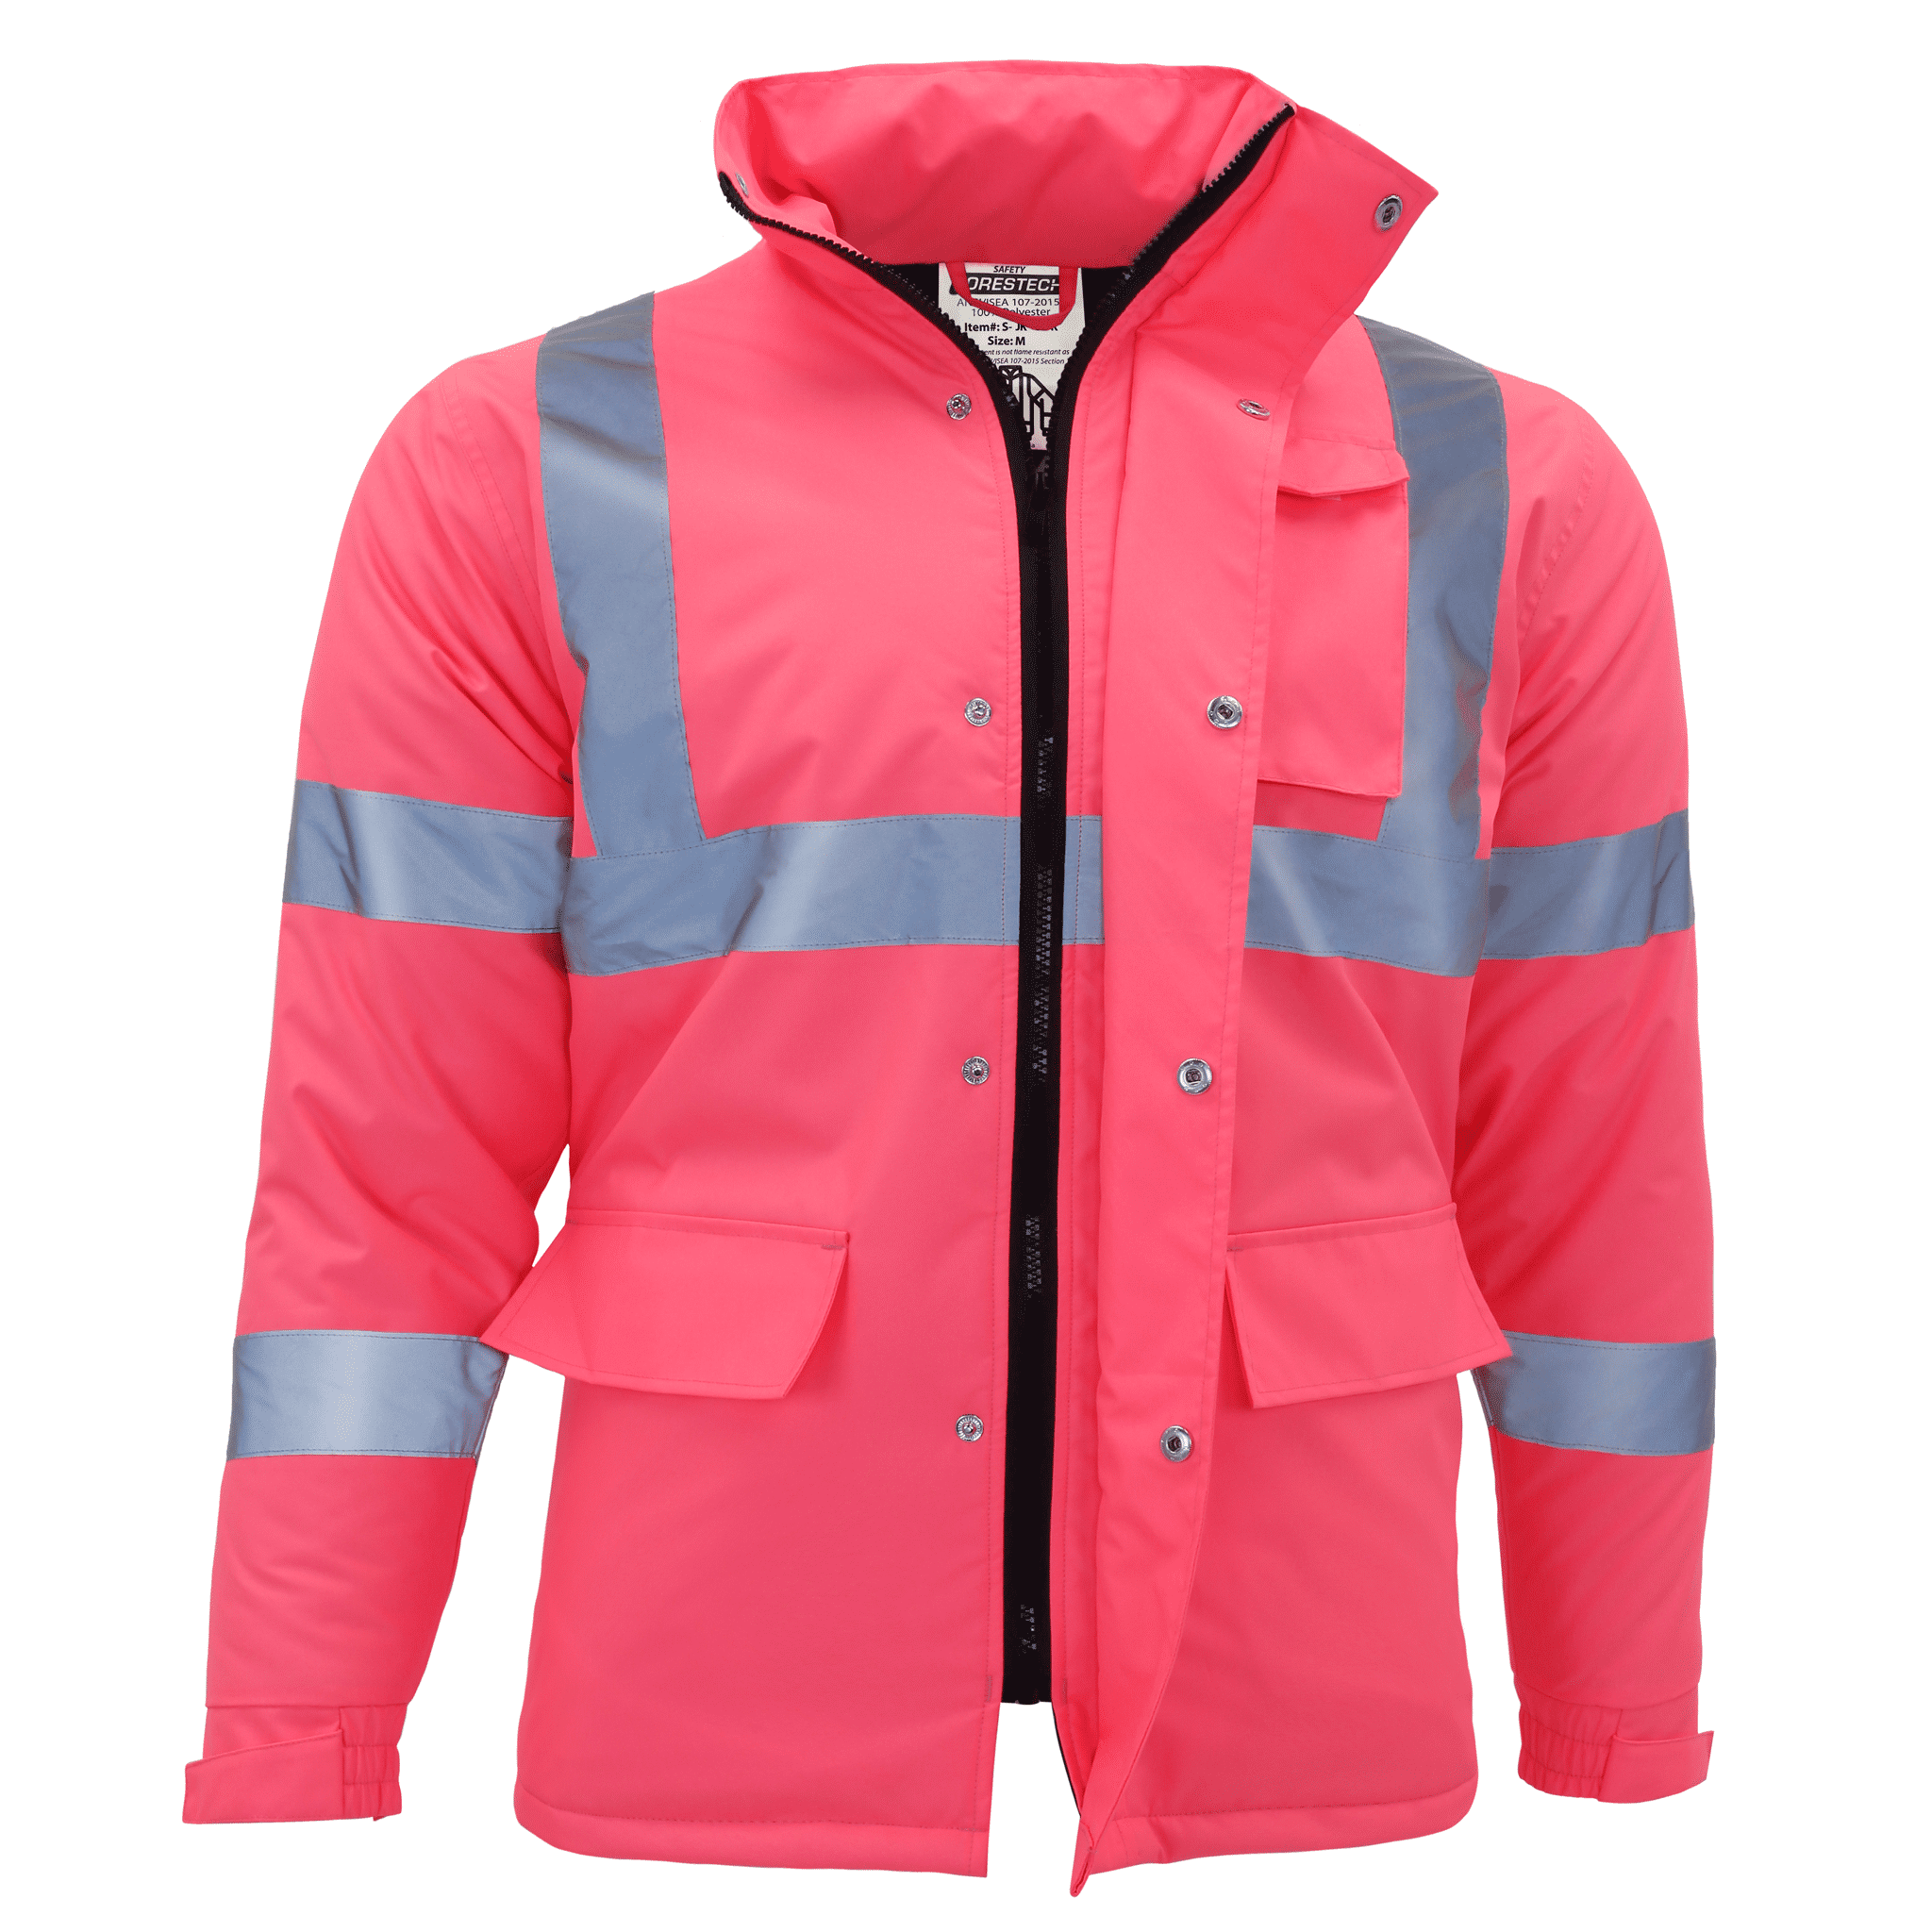 JORESTECH Hi-Vis Safety Jacket, ANSI Class 1 (Pink, L) - Walmart.com